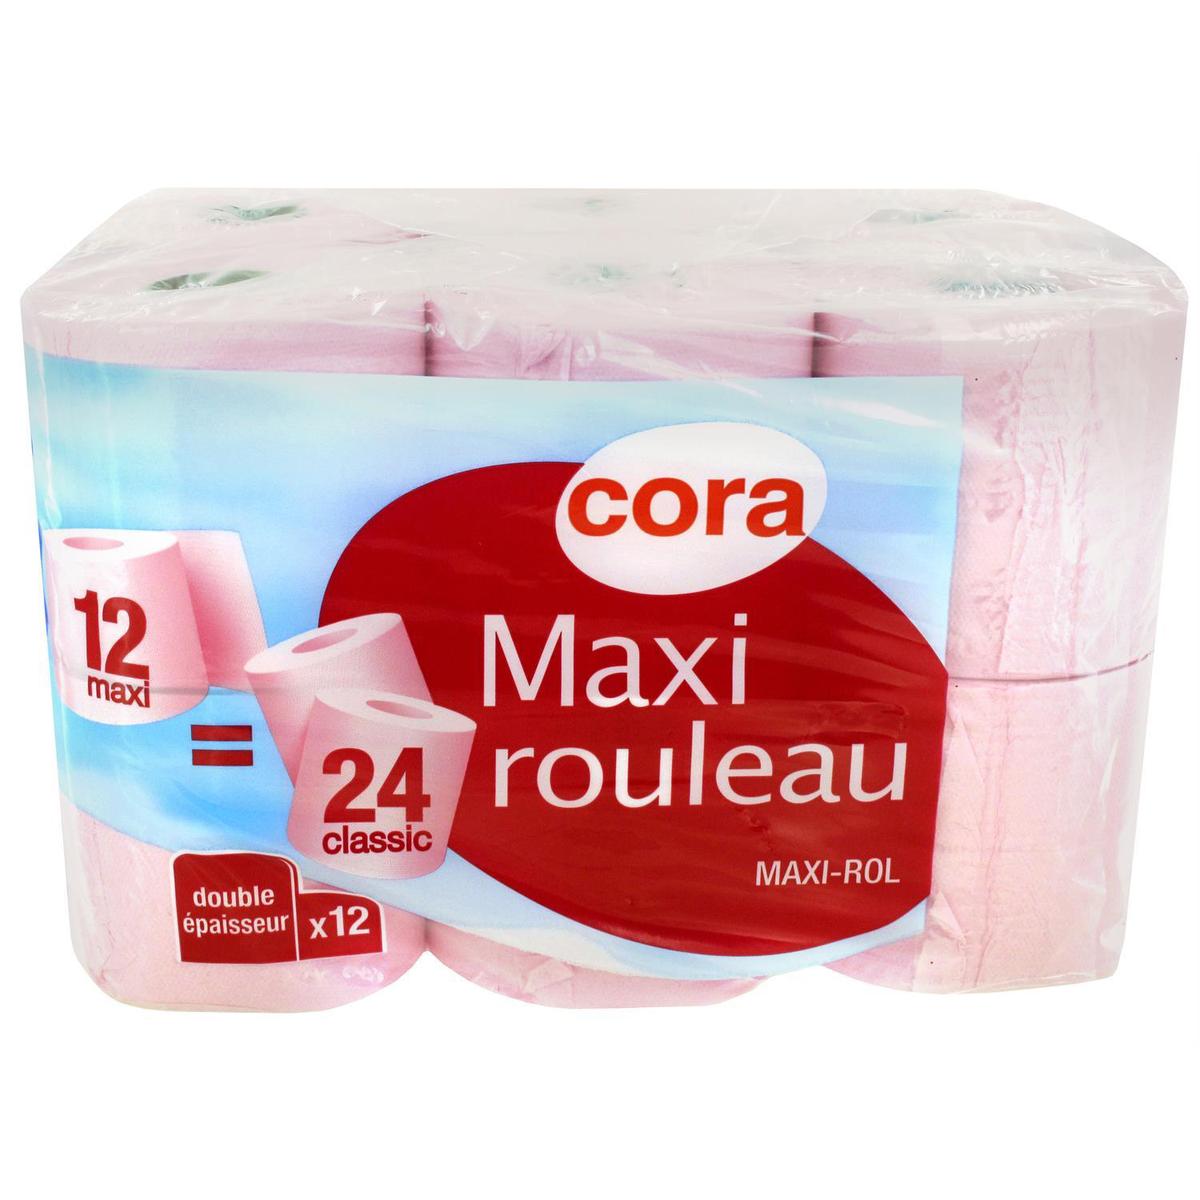 Acheter Cora Papier toilette 12 max = 24 rouleaux classic Maxi rouleau